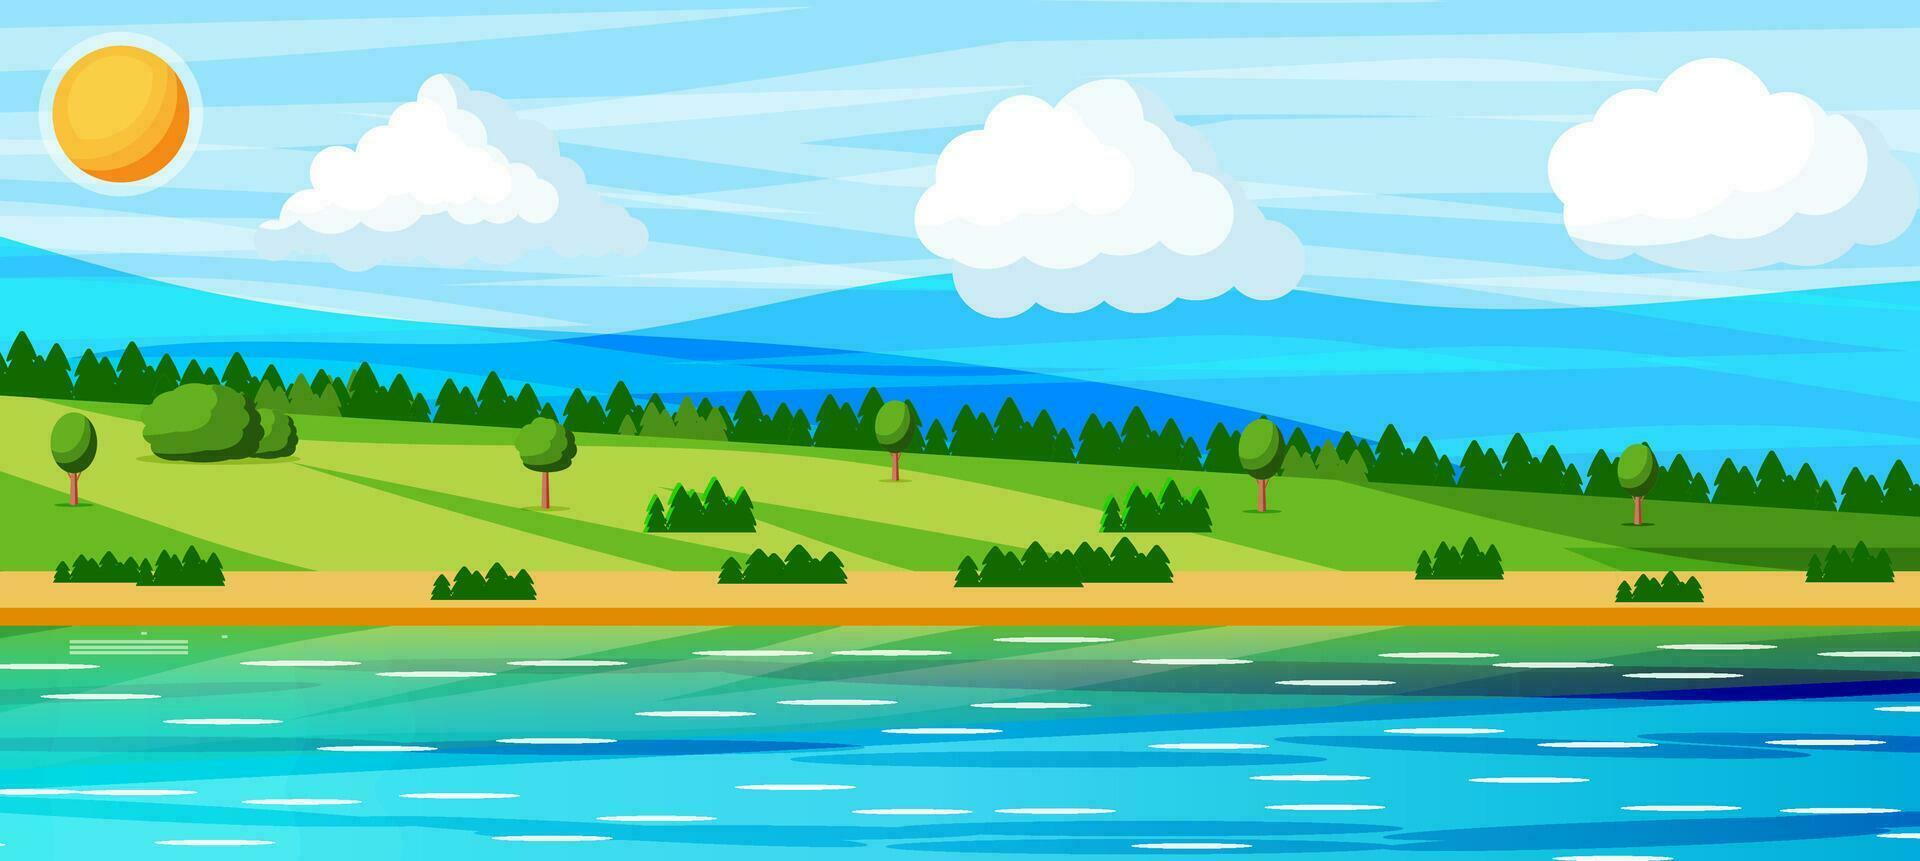 landskap av kullar och flod. sommar natur landskap med skog, gräs, Sol, himmel, sjö och moln. nationell parkera eller natur boka. vektor illustration i platt stil